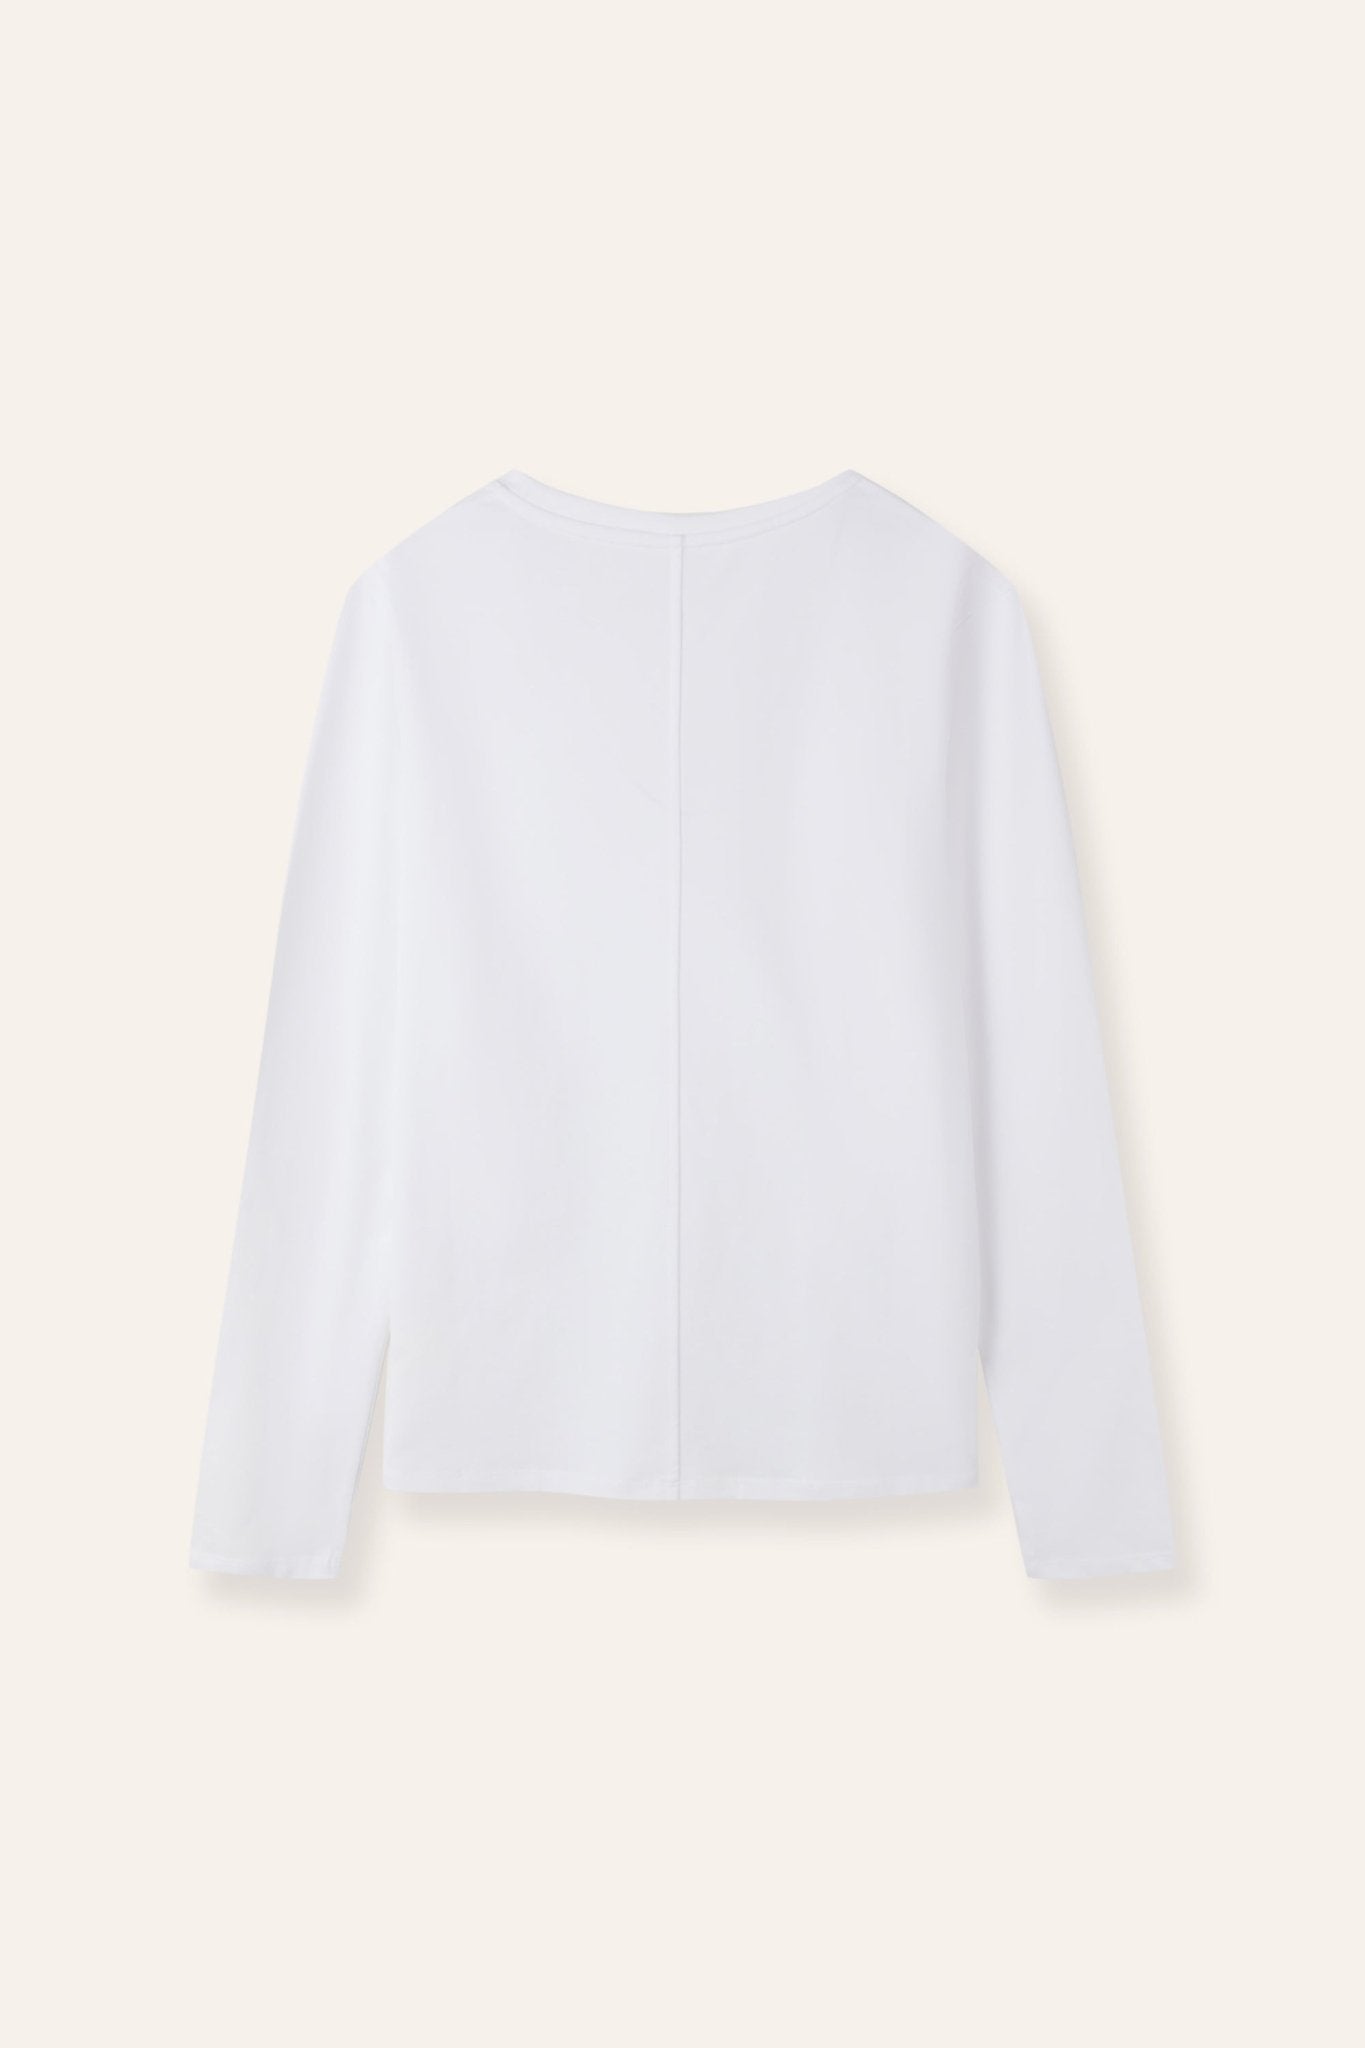 MAN essentials cotton-jersey top (White) - STELLAM